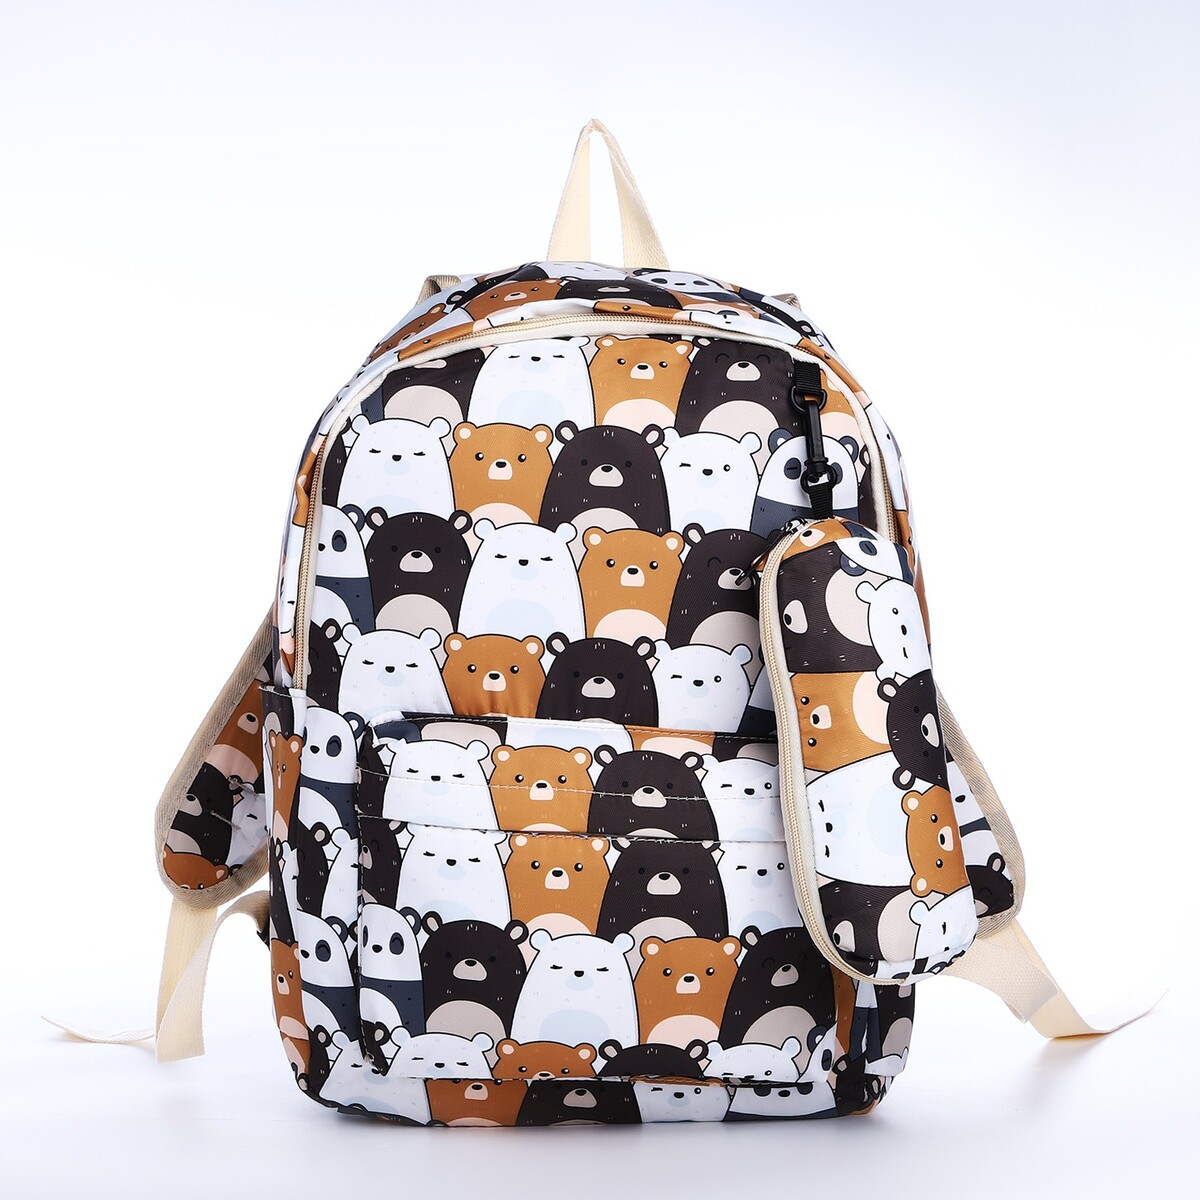 Рюкзак школьный из текстиля на молнии, 3 кармана, пенал, цвет белый/коричневый пенал тубус школьный на молнии